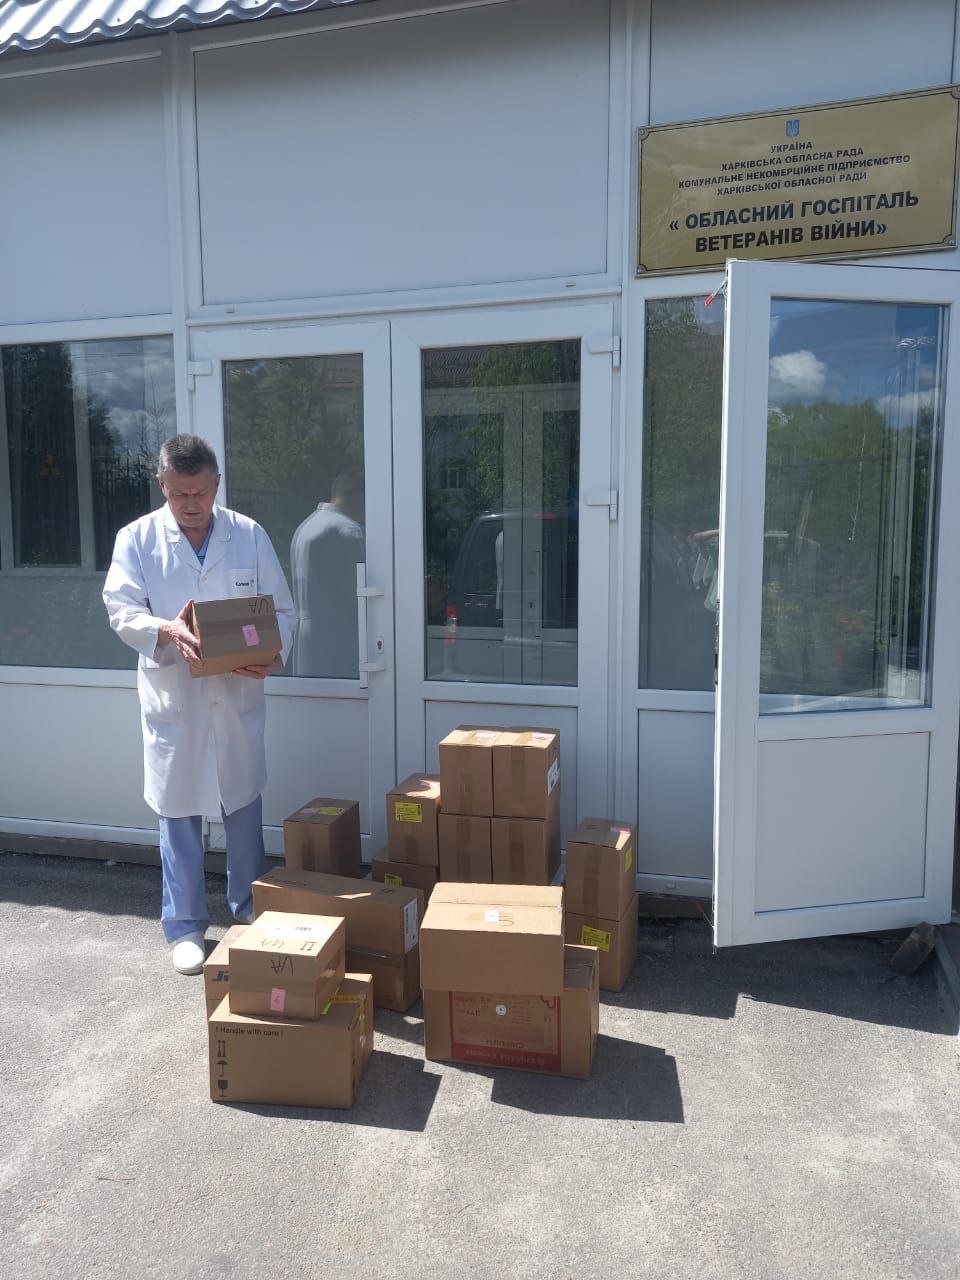 3 Kharkiv hospitals have received medical supplies